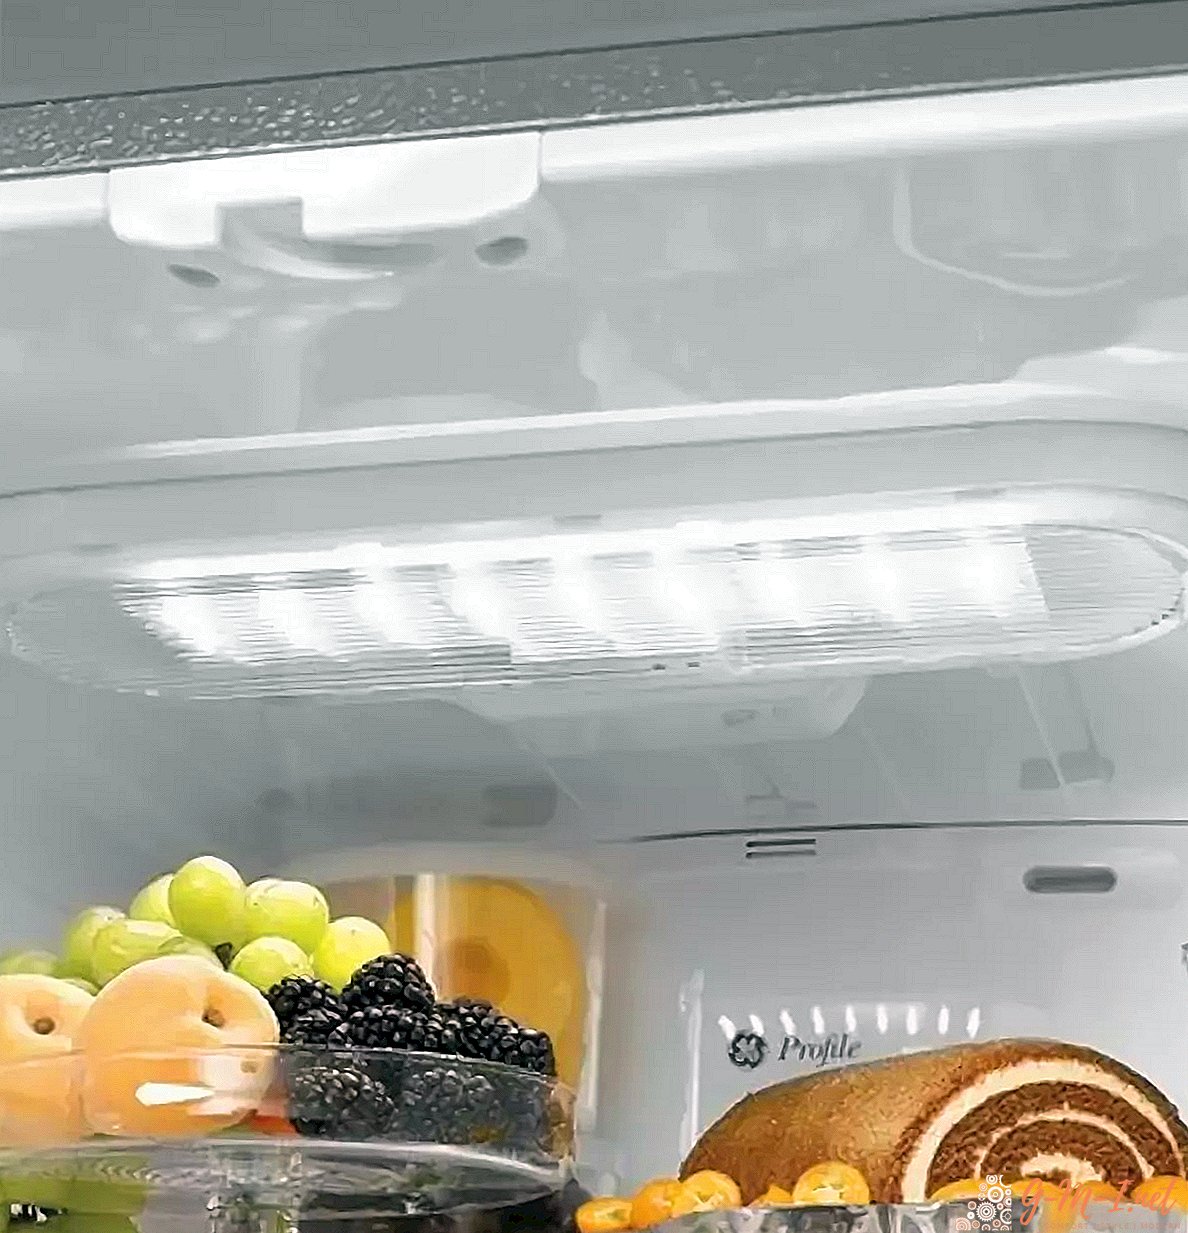 كيف تستبدل المصباح الكهربائي في الثلاجة بنفسك: حتى المرأة يمكنها أن تتعامل معه!